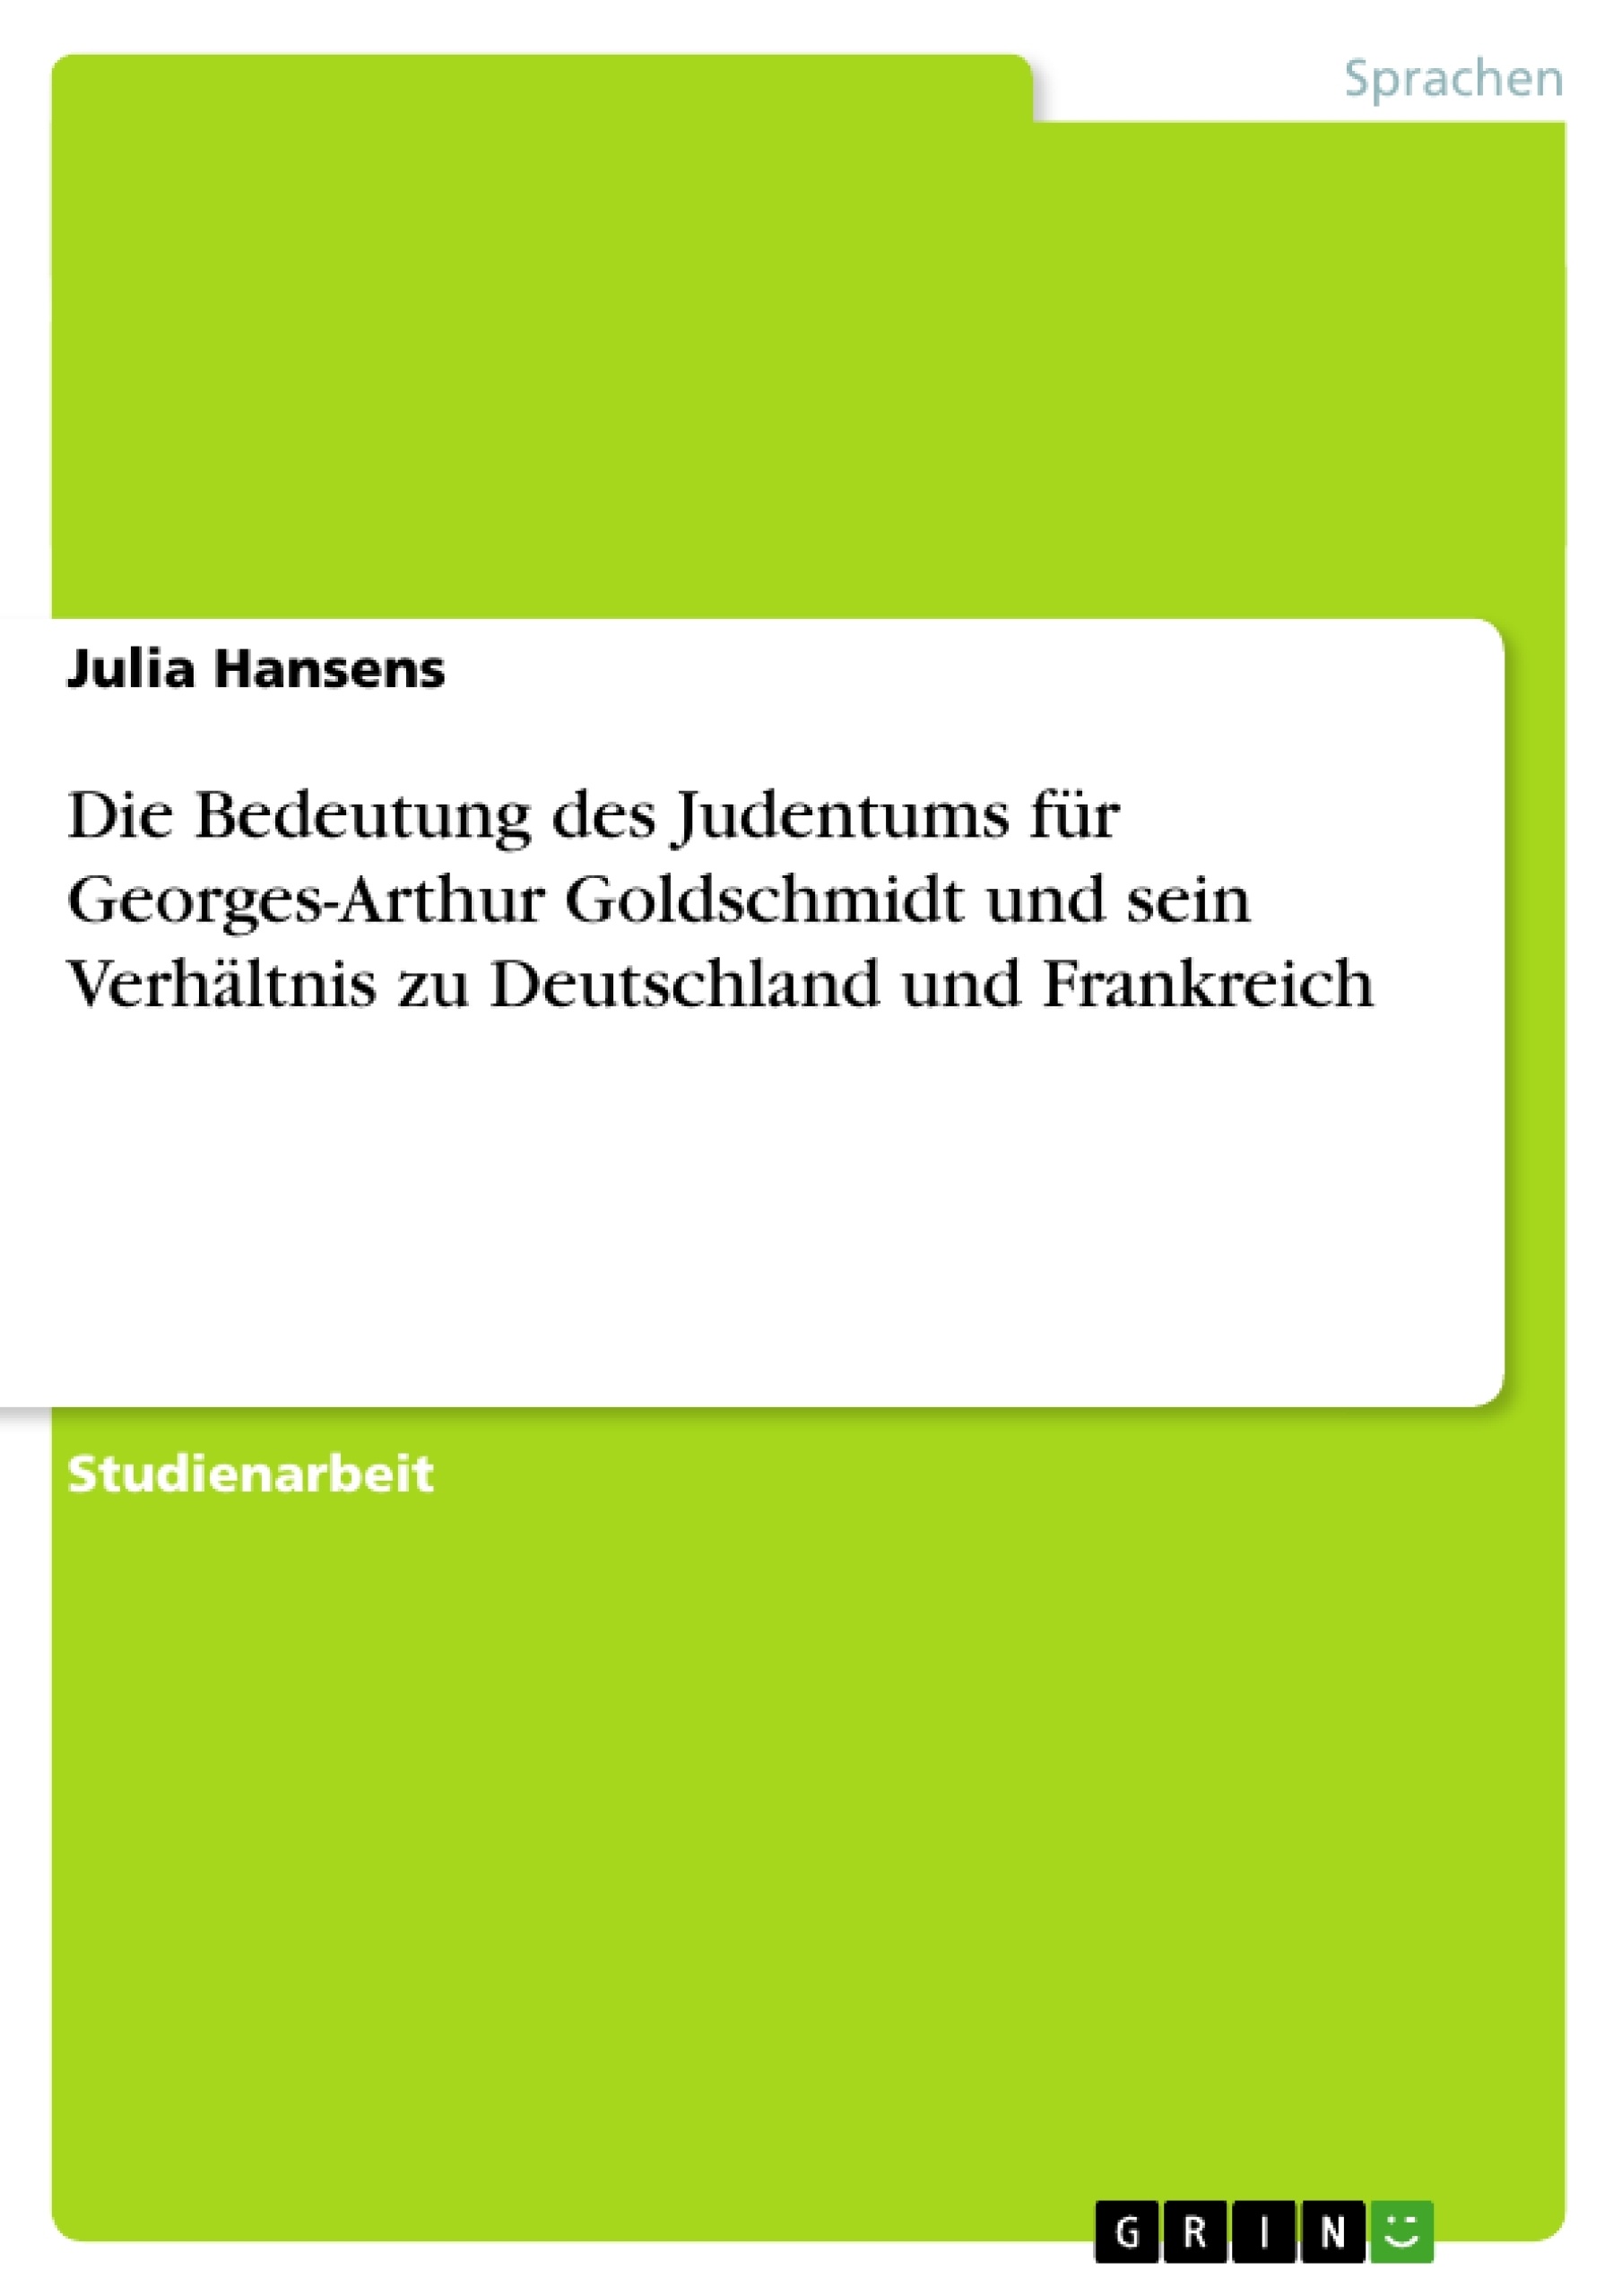 Title: Die Bedeutung des Judentums für Georges-Arthur Goldschmidt und sein Verhältnis zu Deutschland und Frankreich